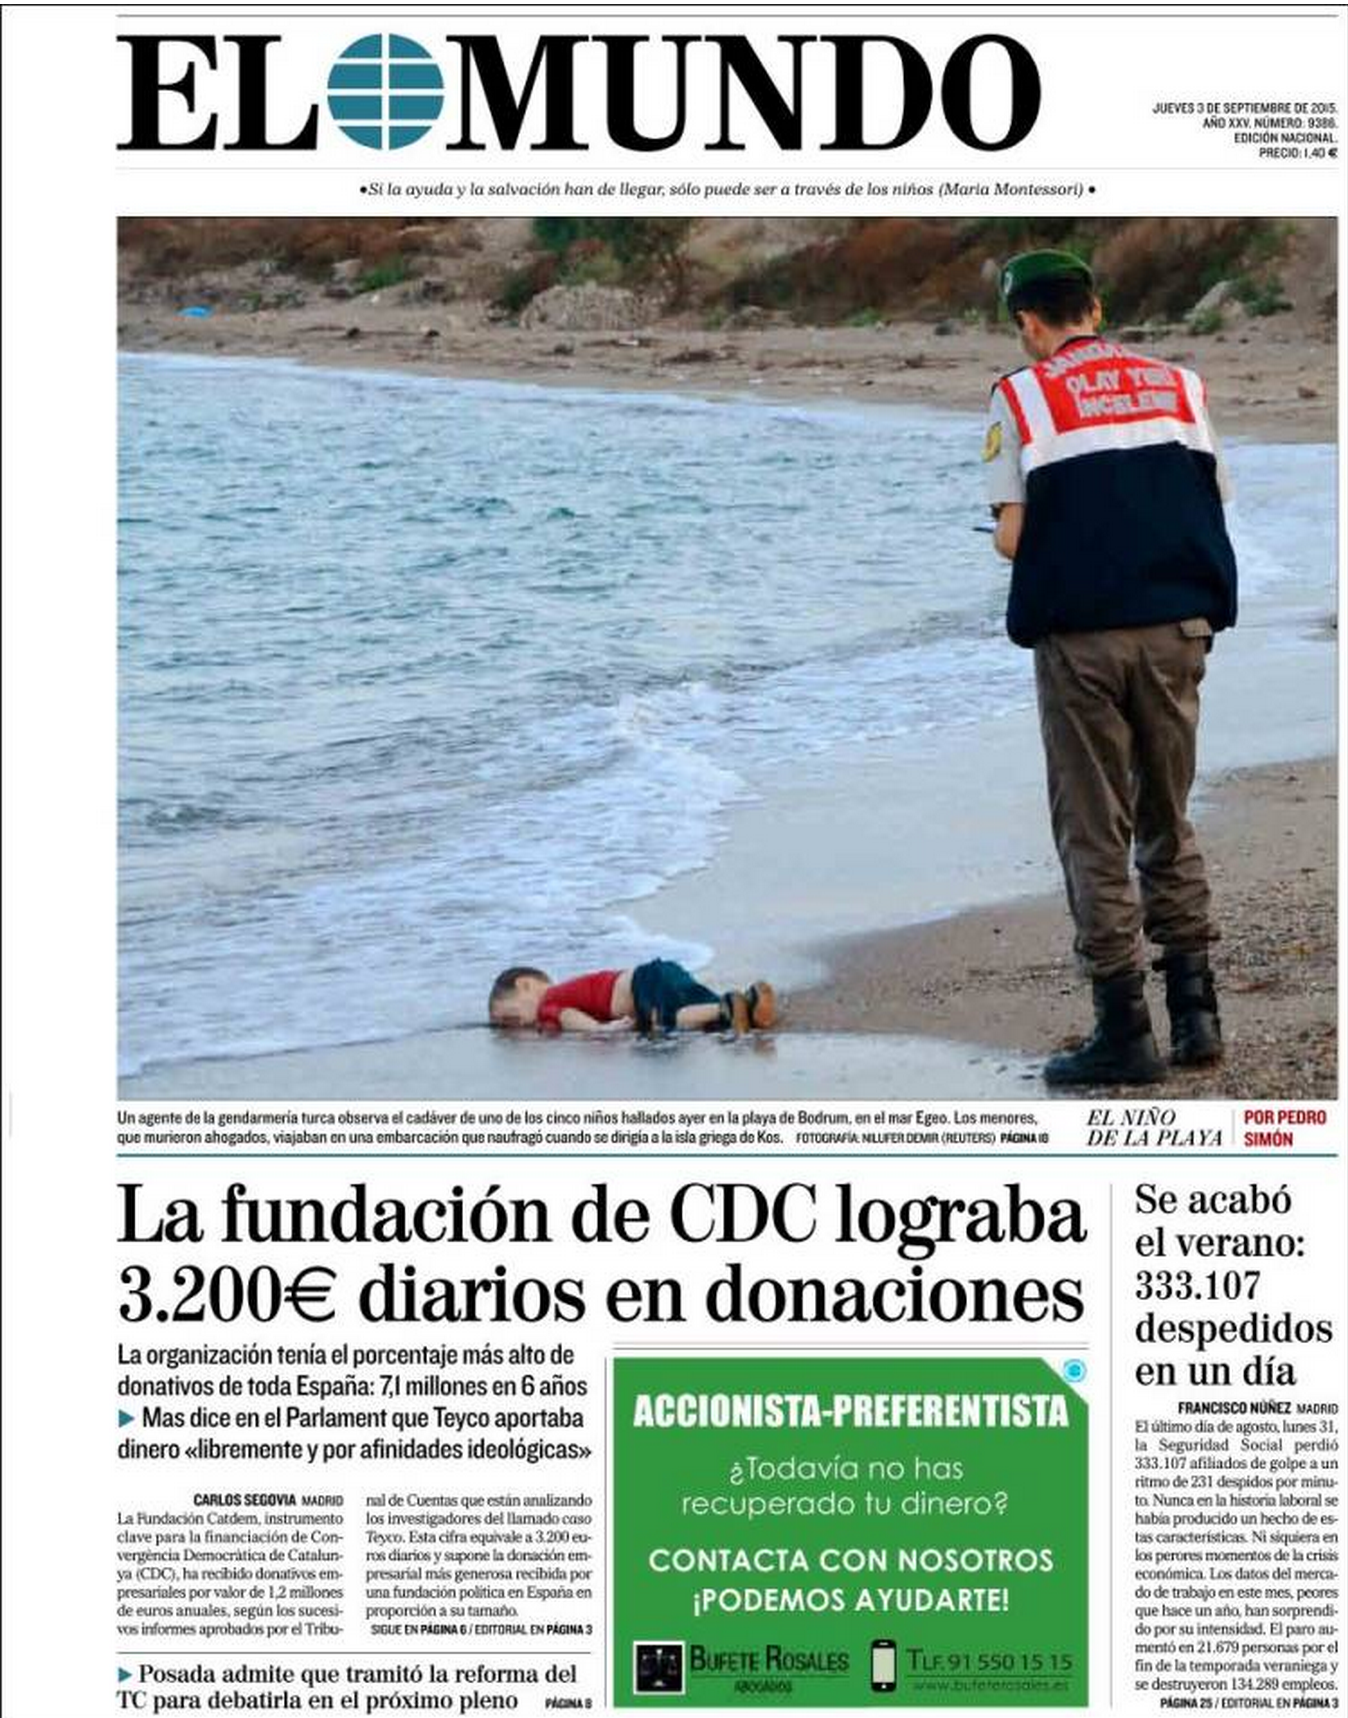 Drowned Migrant Boy El Mundo front page